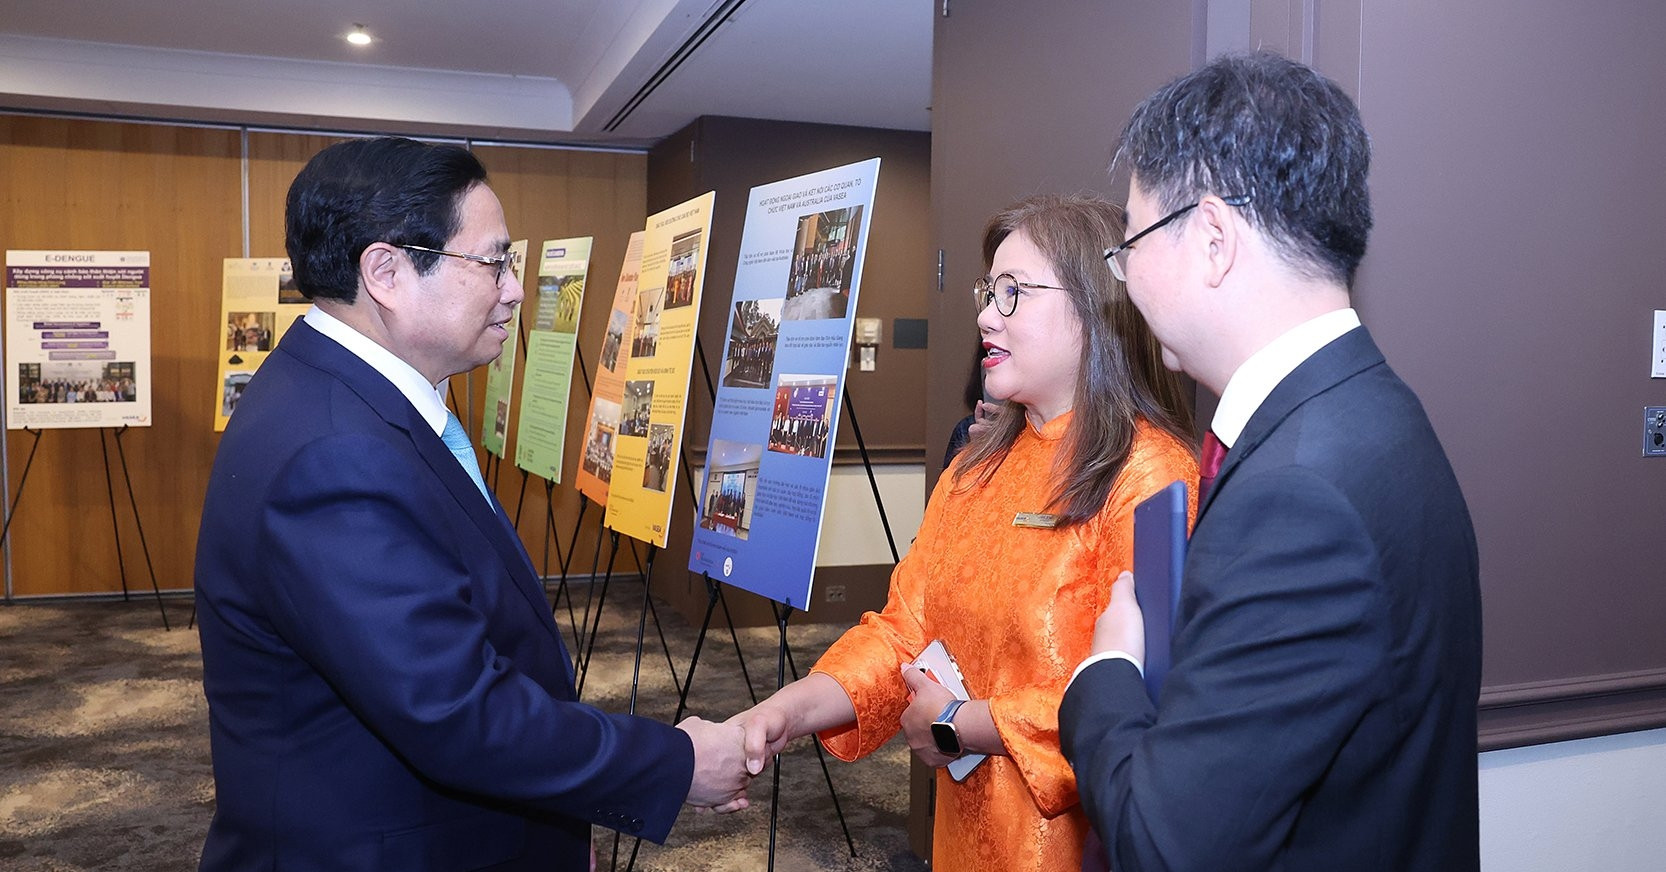 
Thủ tướng mong muốn các trí thức và chuyên gia người Việt tiếp tục đóng góp trực tiếp, thiết thực cho công cuộc xây dựng và phát triển đất nước bằng những chương trình, dự án cụ thể - Ảnh: VGP/Nhật Bắc
